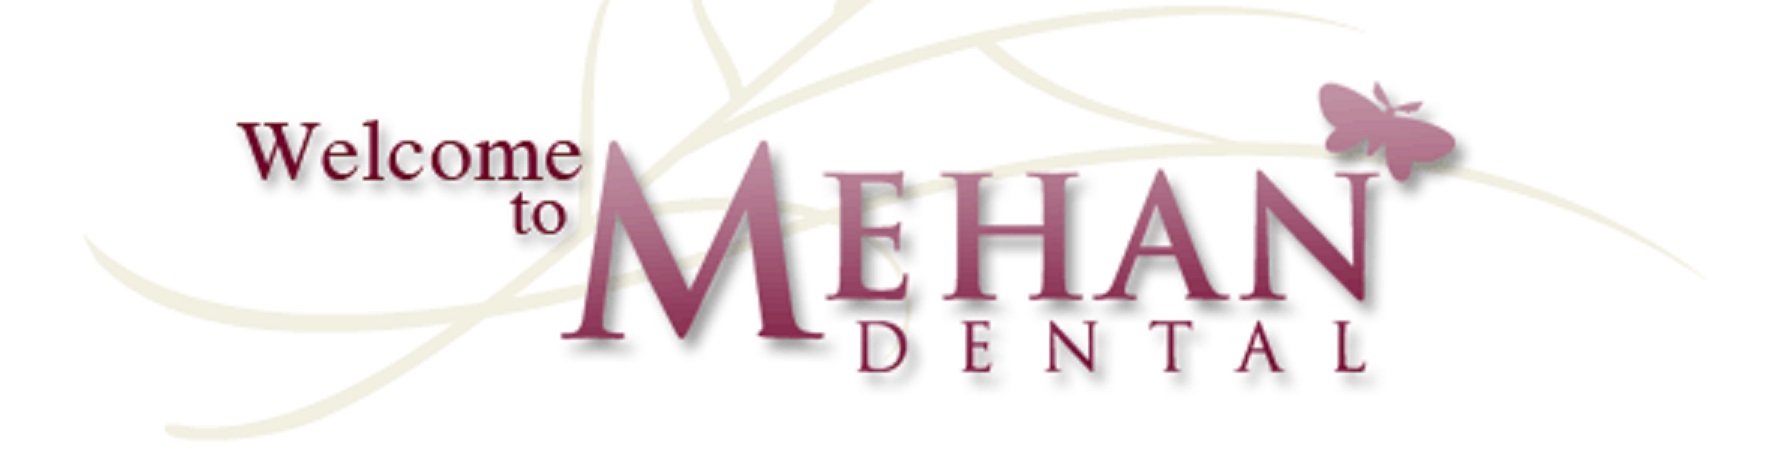 Mehan Dental